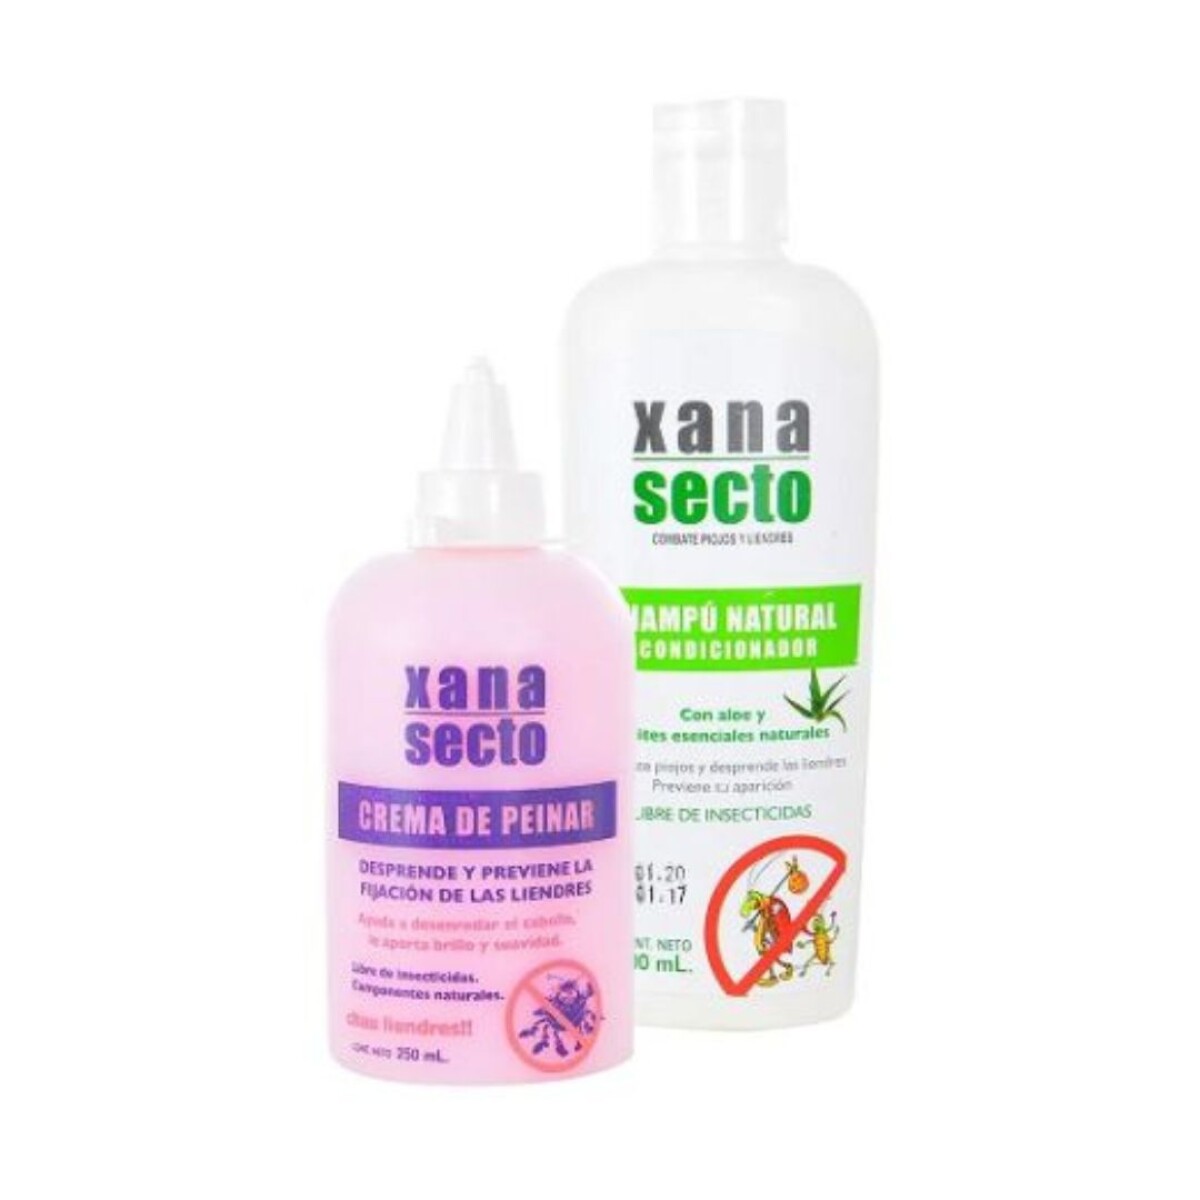 Xana-Secto Shampoo 120ml + Crema de Peinar 265ml 